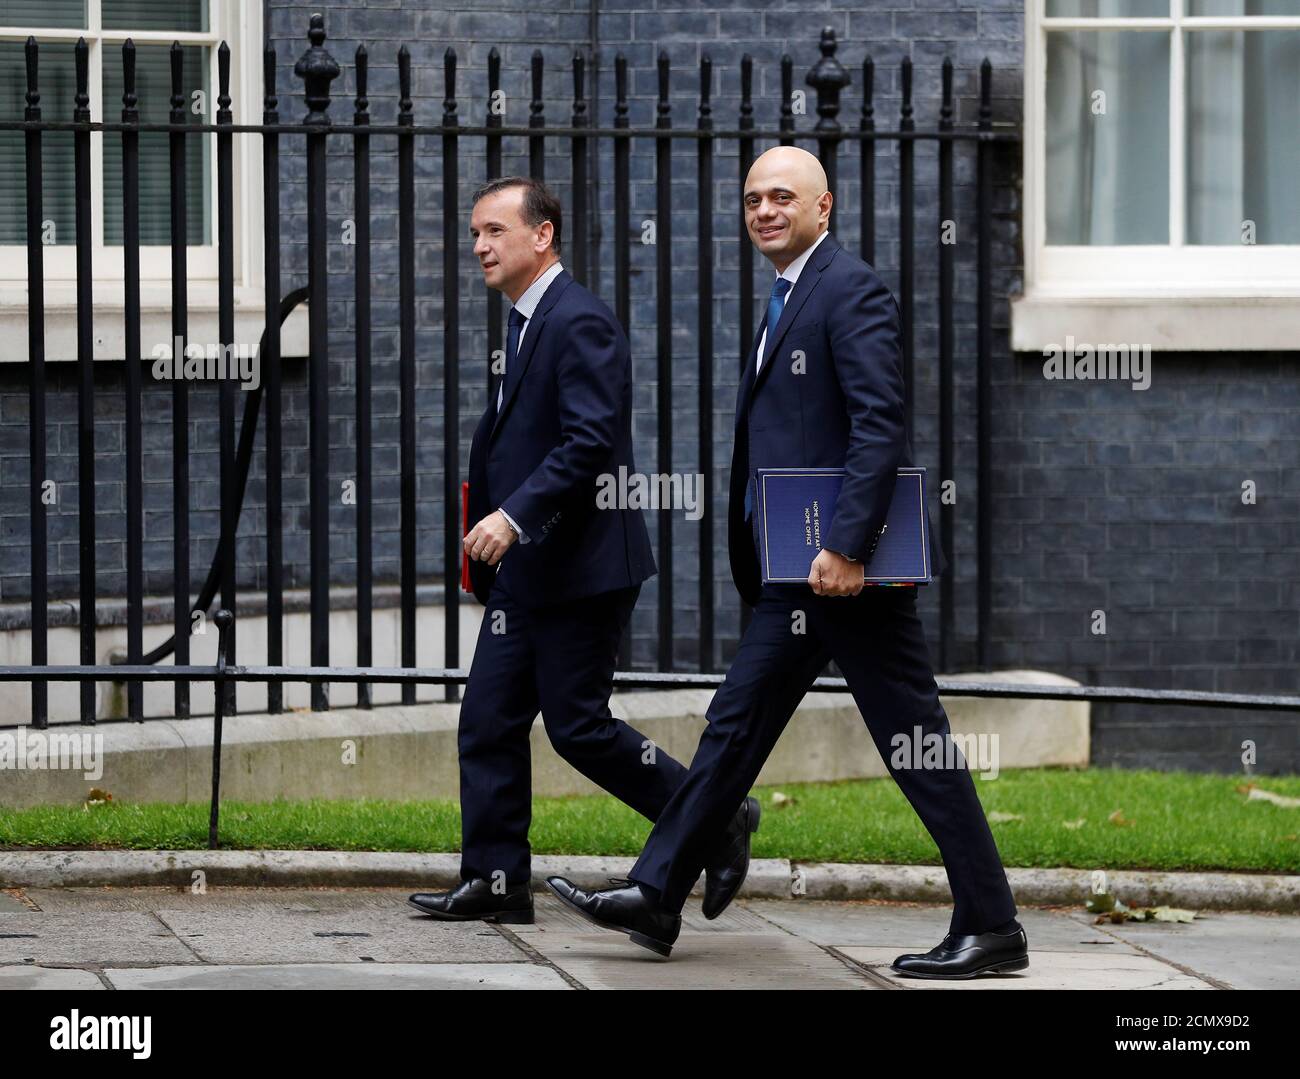 El Secretario de Estado de Gales, Alun Cairns, y el Secretario del Interior de Gran Bretaña, Sajid Javid, llegan a Downing Street, Londres, Gran Bretaña, el 11 de junio de 2019. REUTERS/Peter Nicholls Foto de stock